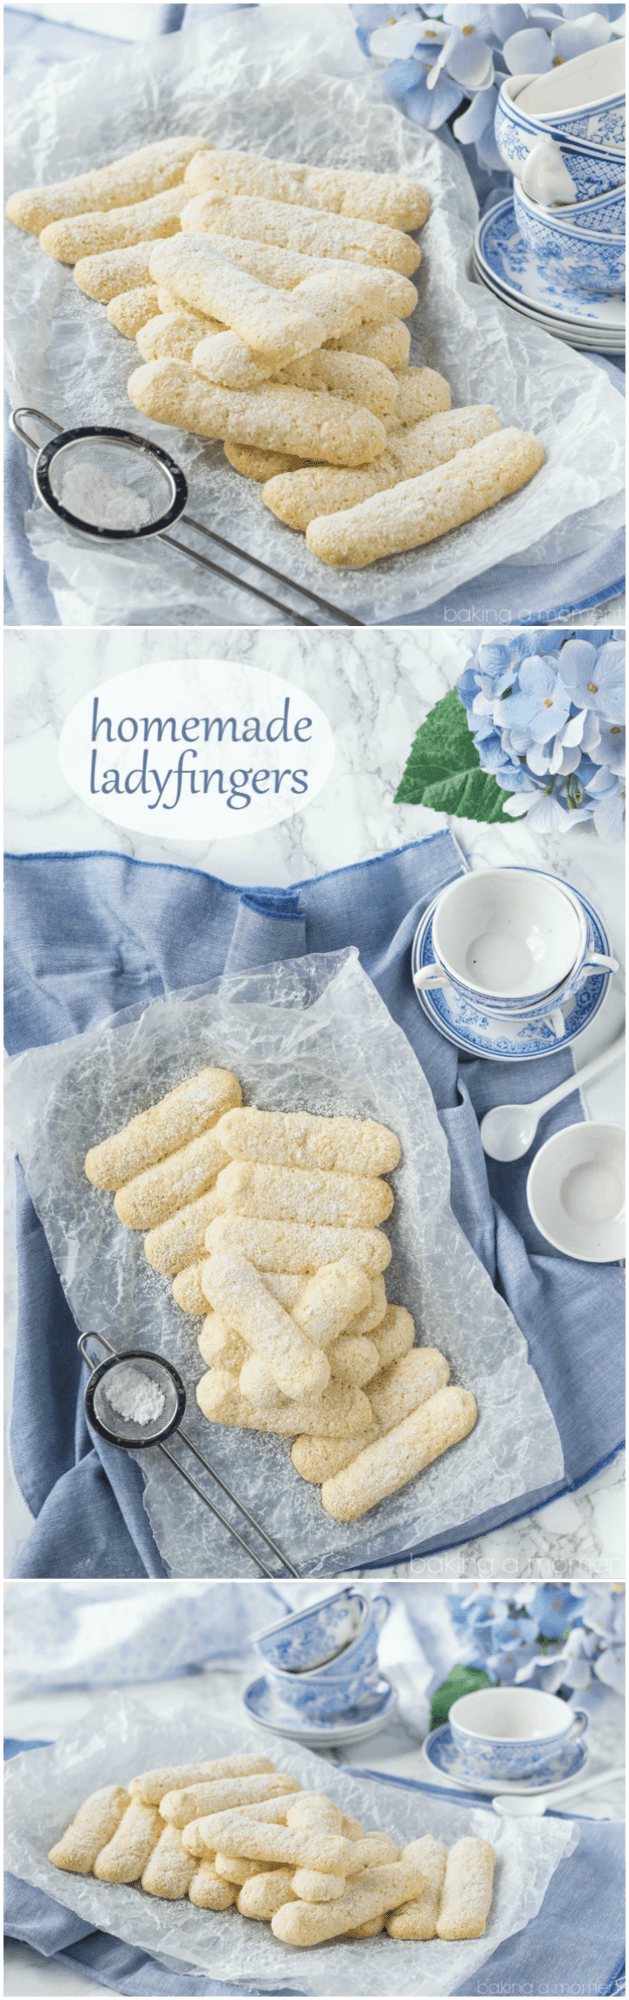 Homemade Ladyfingers- I've always wondered how to make these! Next time I make tiramisu I'll use this recipe ;)